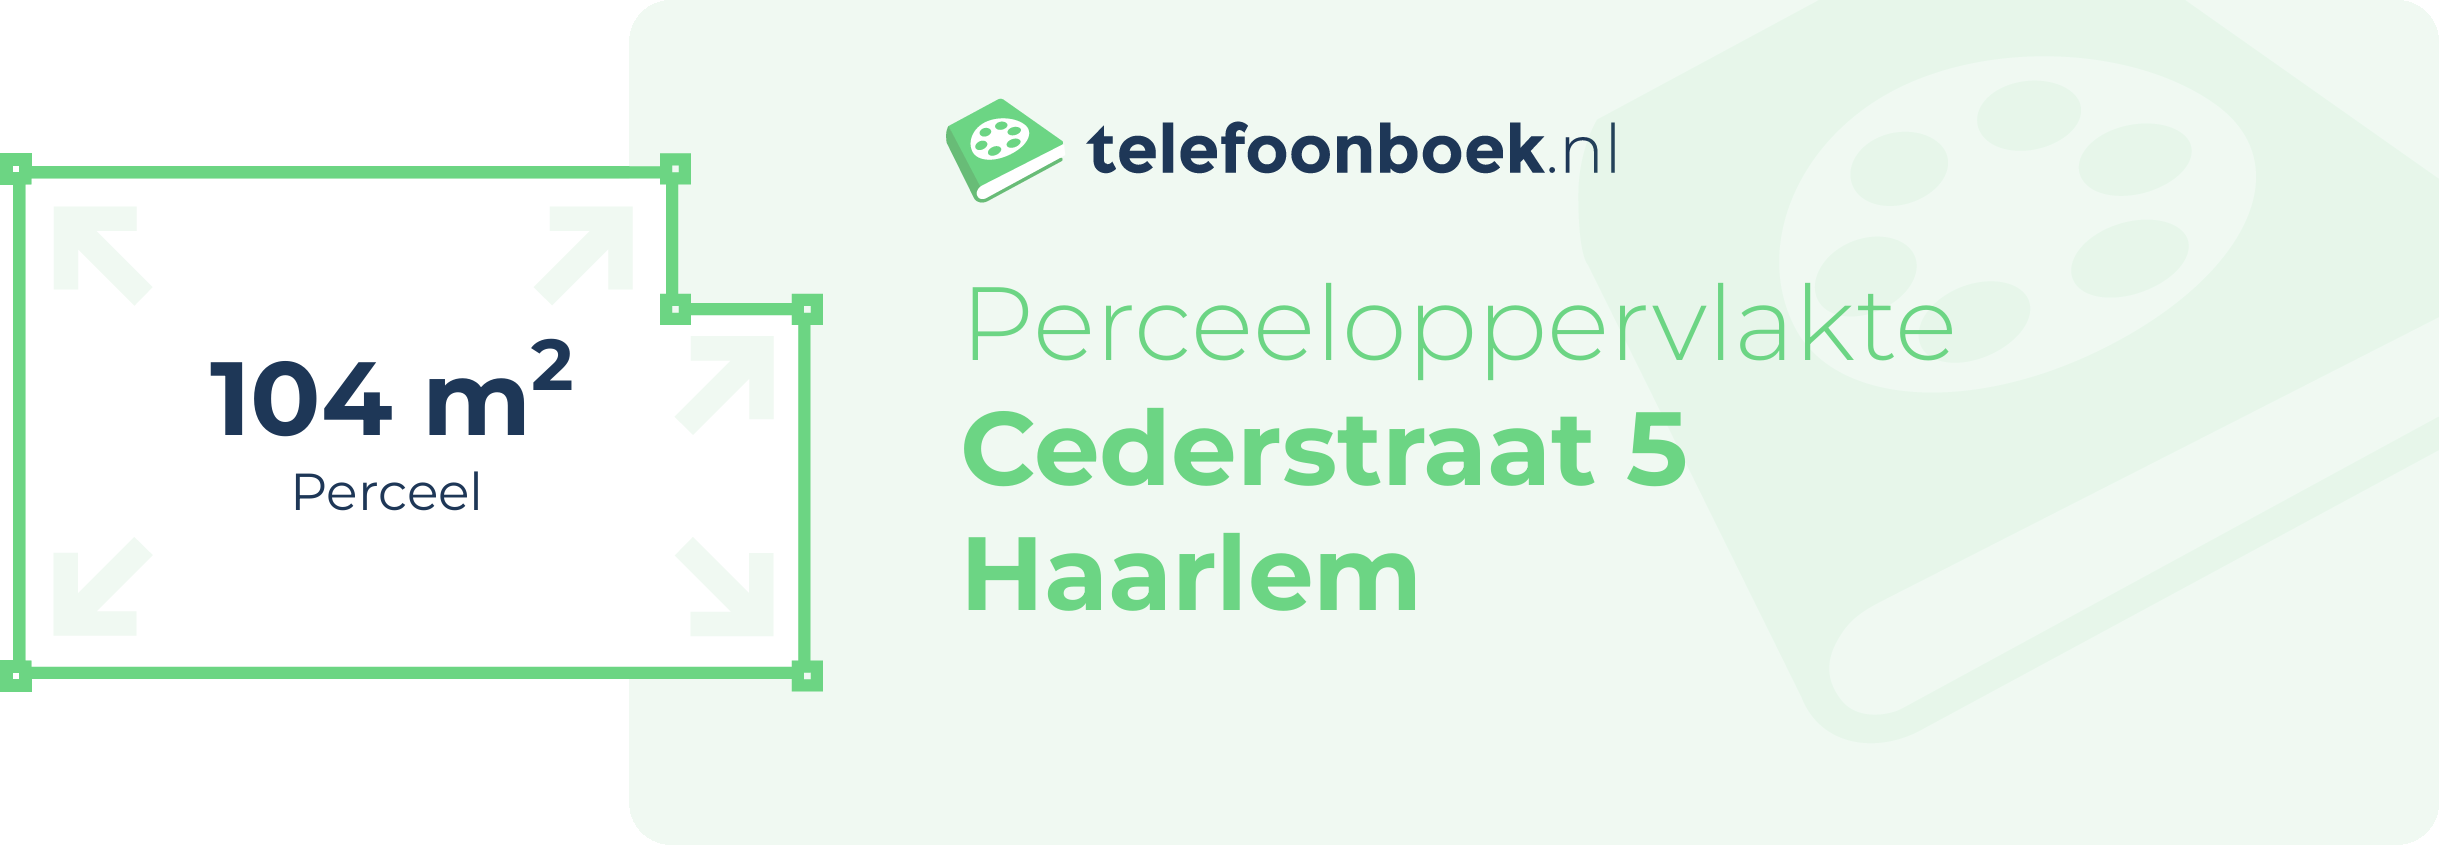 Perceeloppervlakte Cederstraat 5 Haarlem